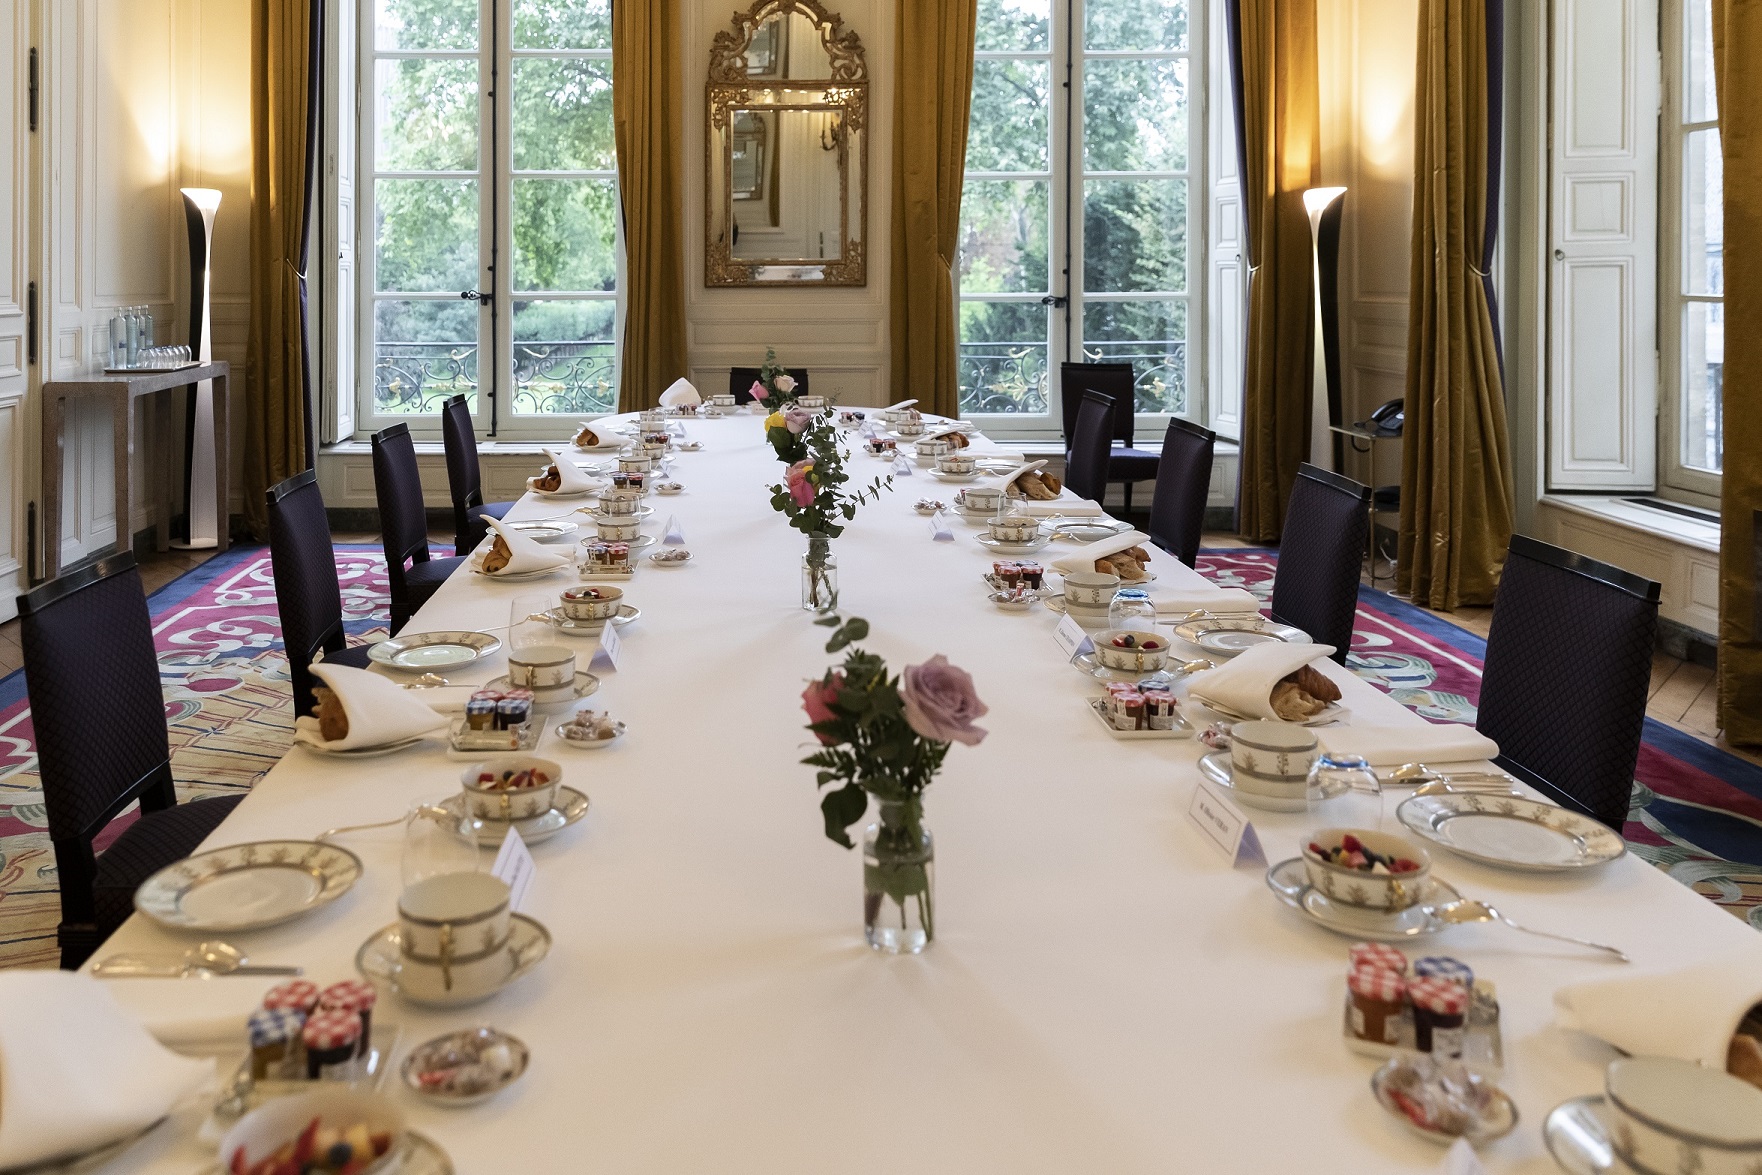 Table
de la salle à manger dressée avec un service de la Manufacture de Sèvres.